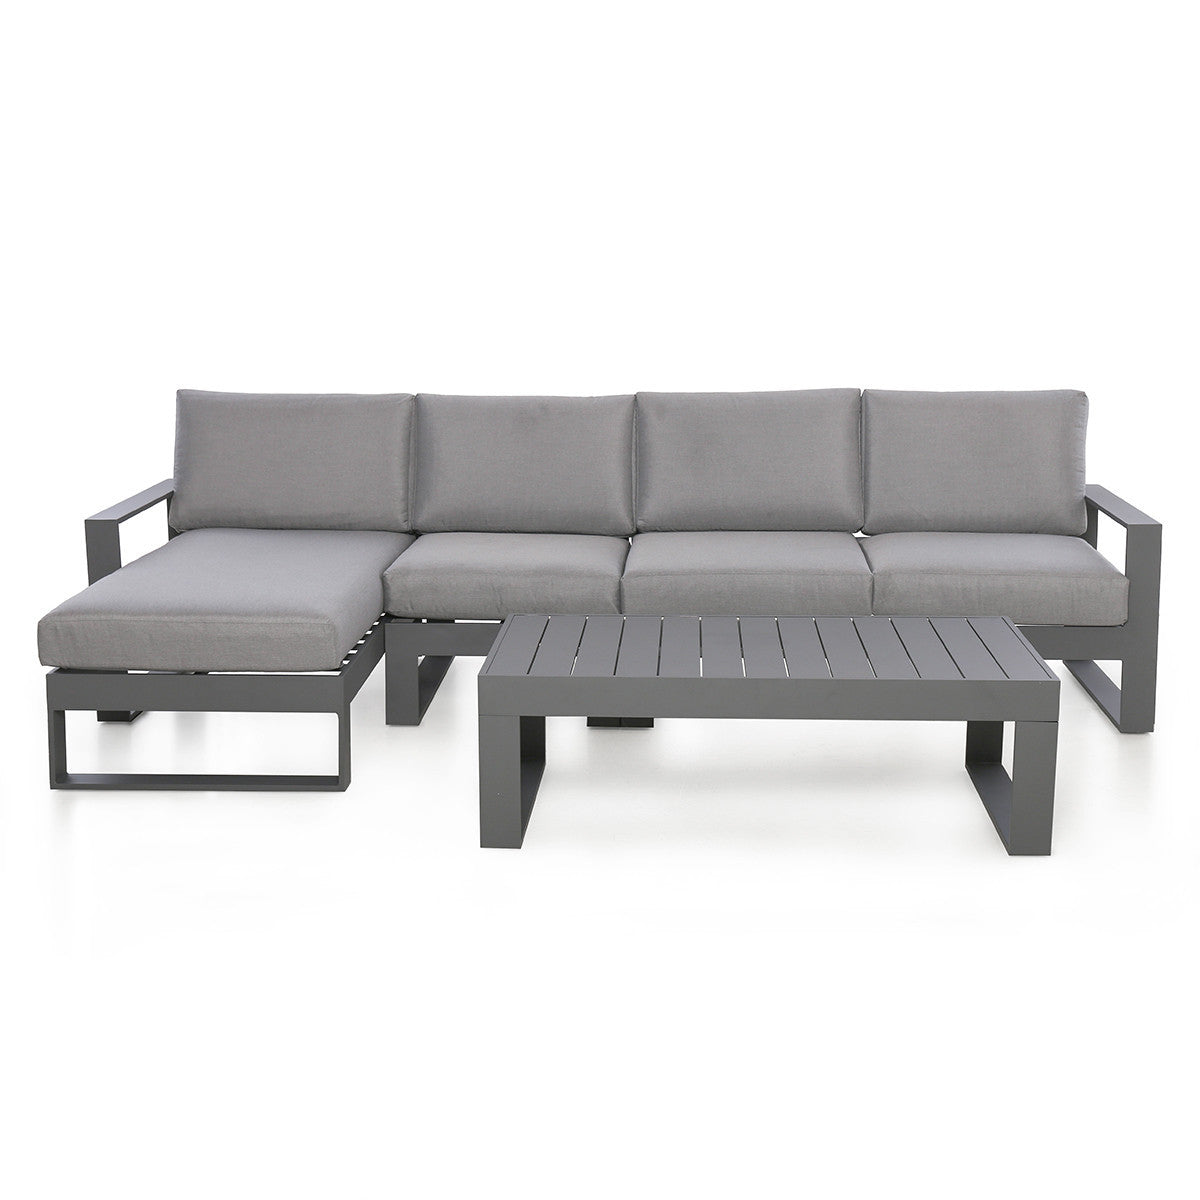 Amalfi Outdoor Fabric Chaise Sofa Set